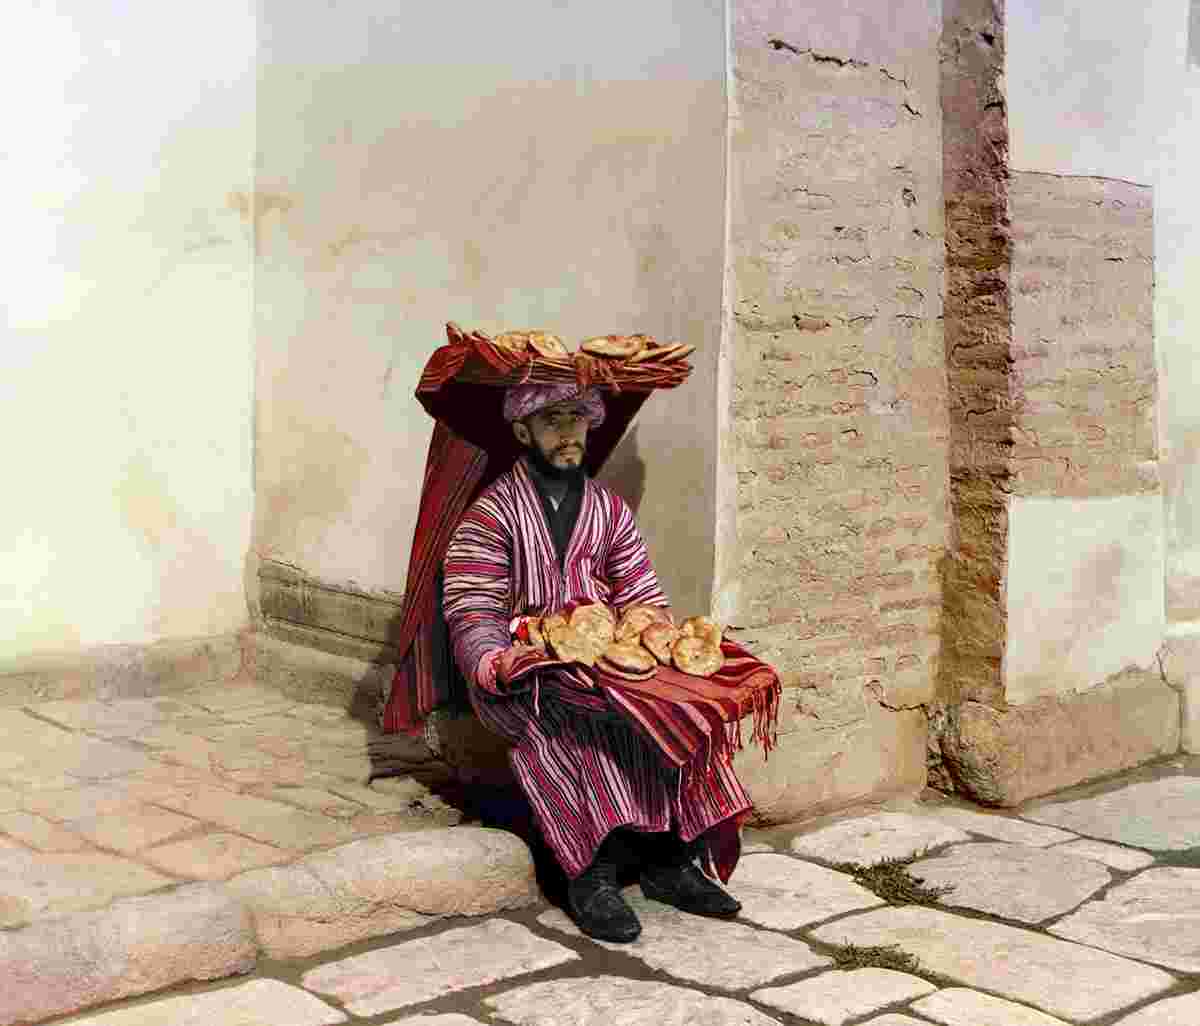 Samarkand. Bread seller, 1905